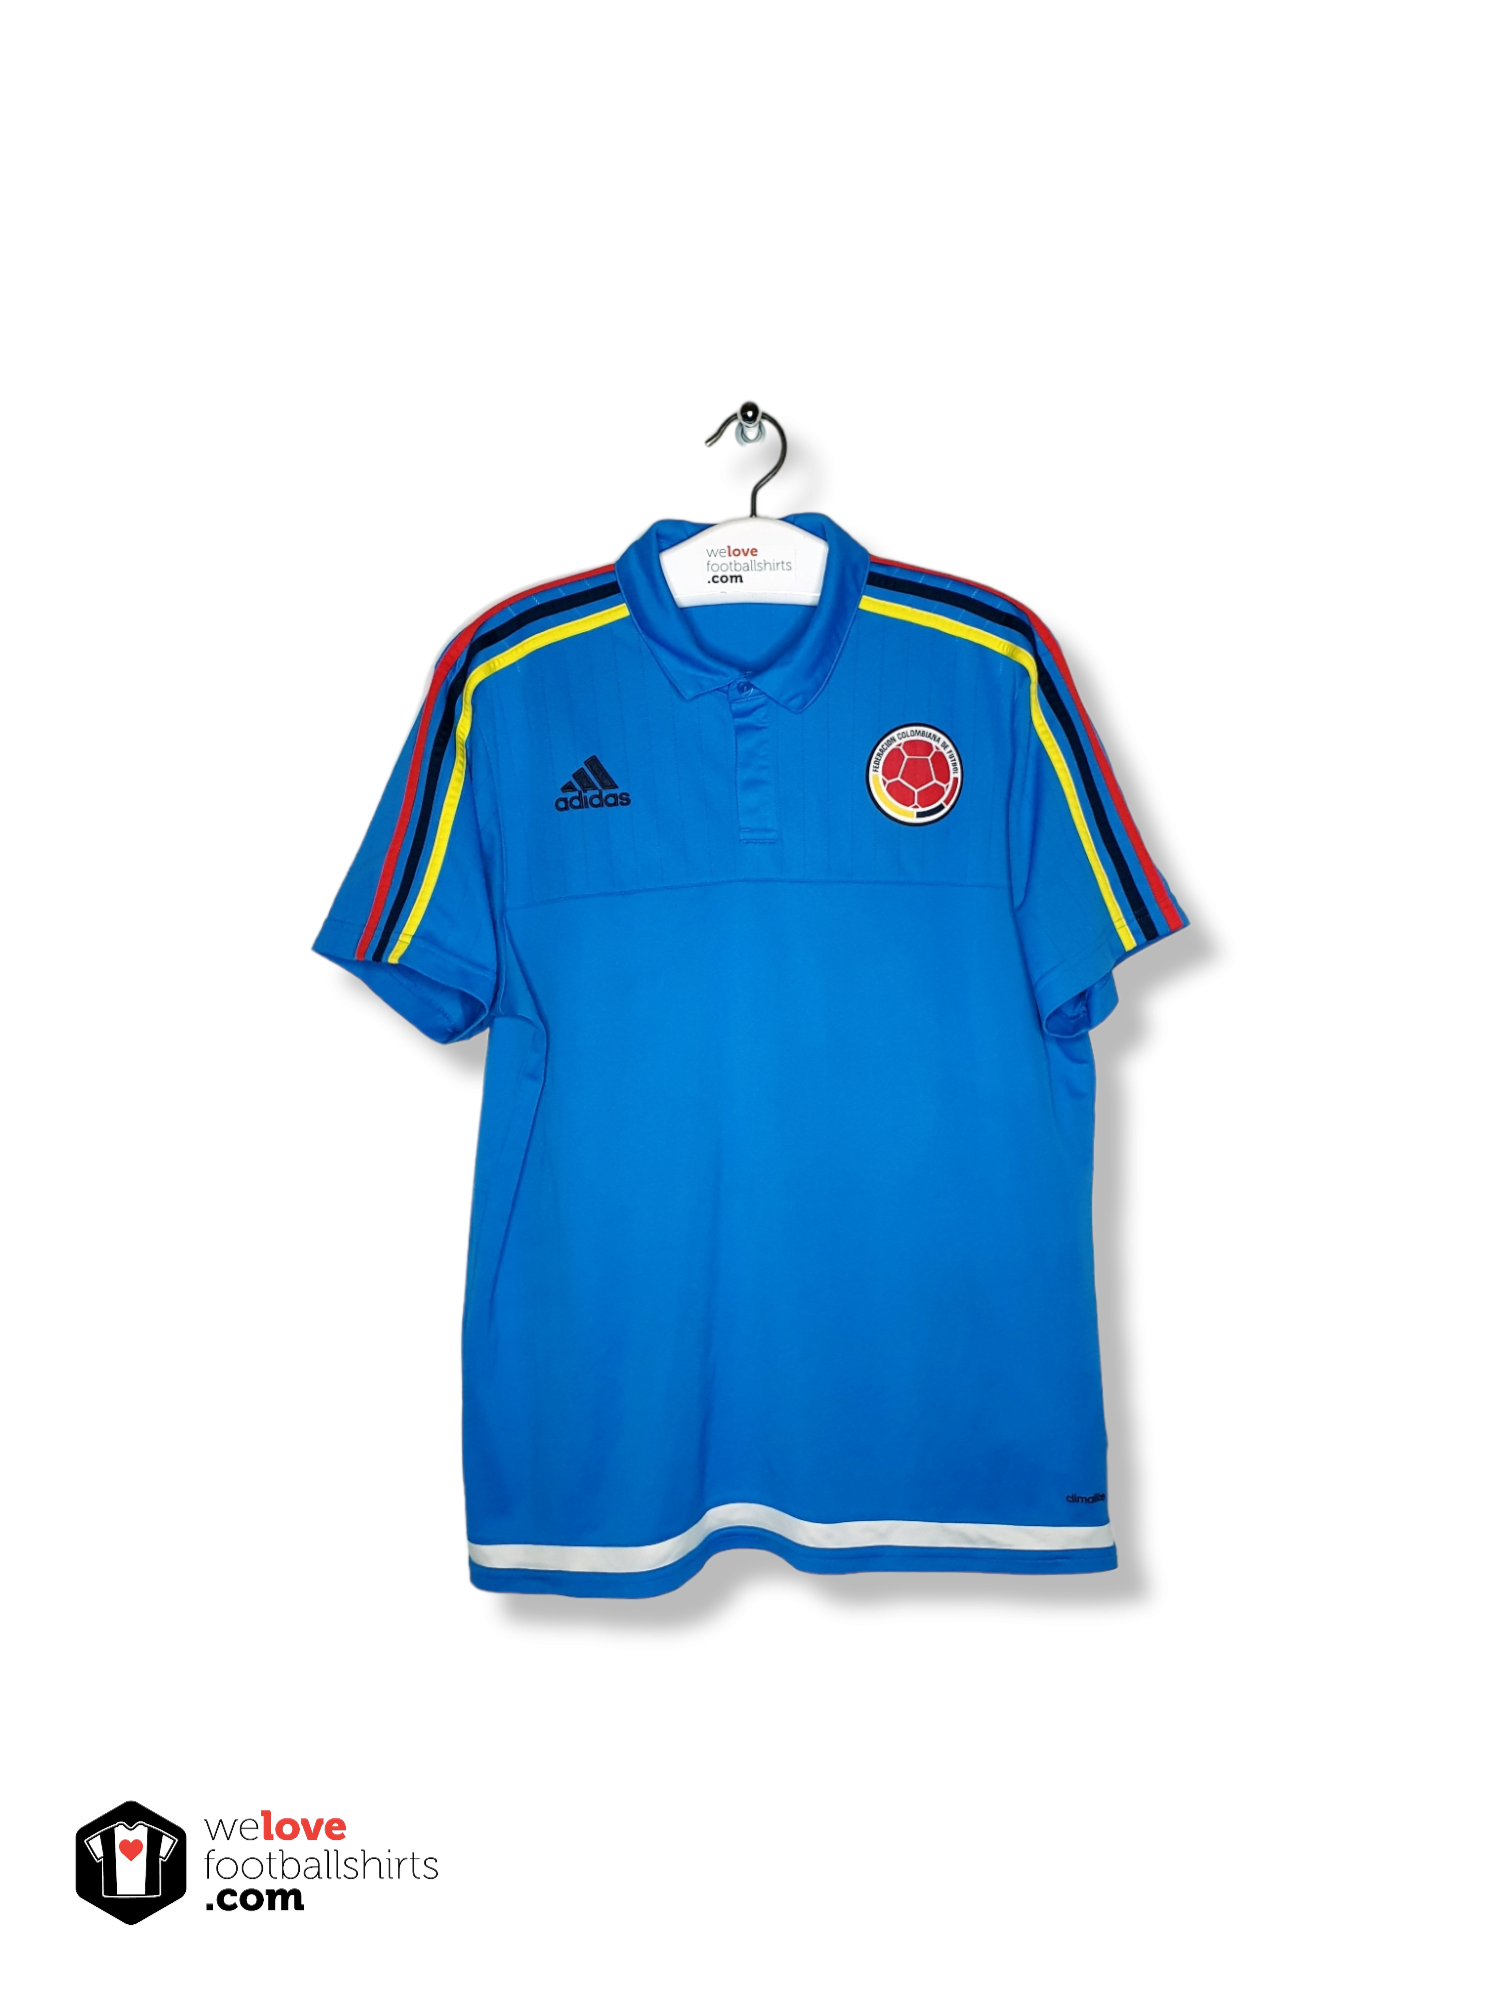 Gastos de envío Adolescencia estimular Adidas Football Polo Colombia 2015 - Welovefootballshirts.com